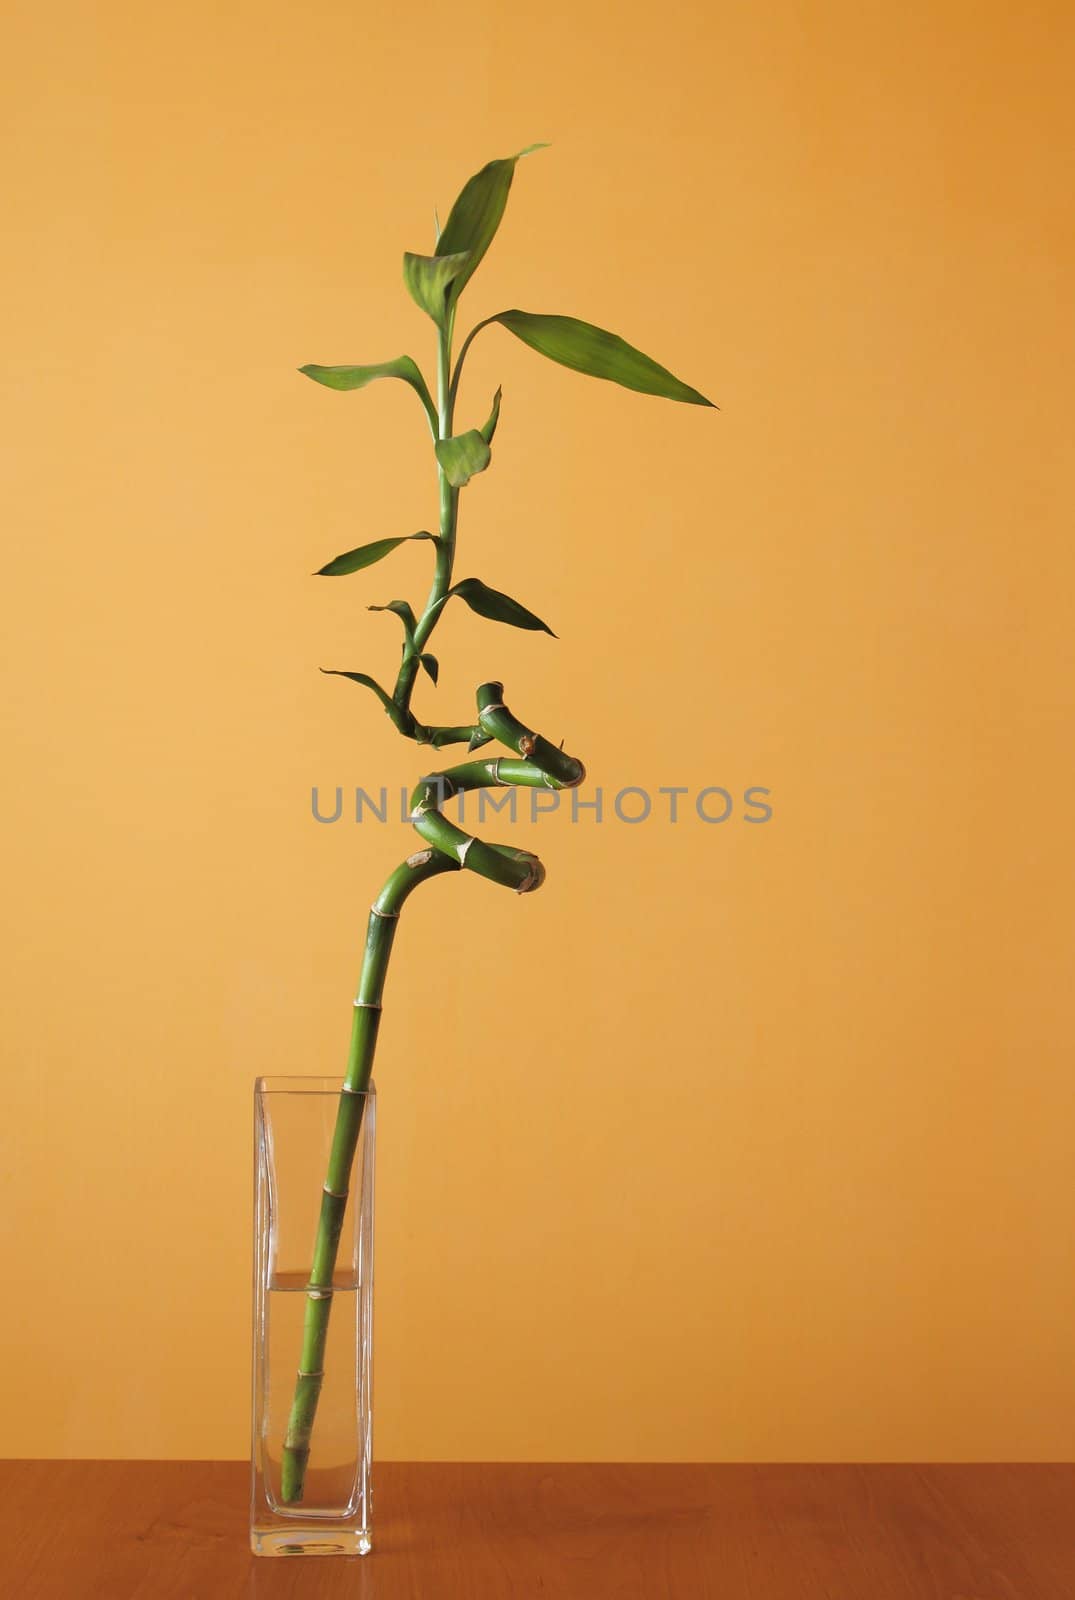 lucky bamboo on orange background